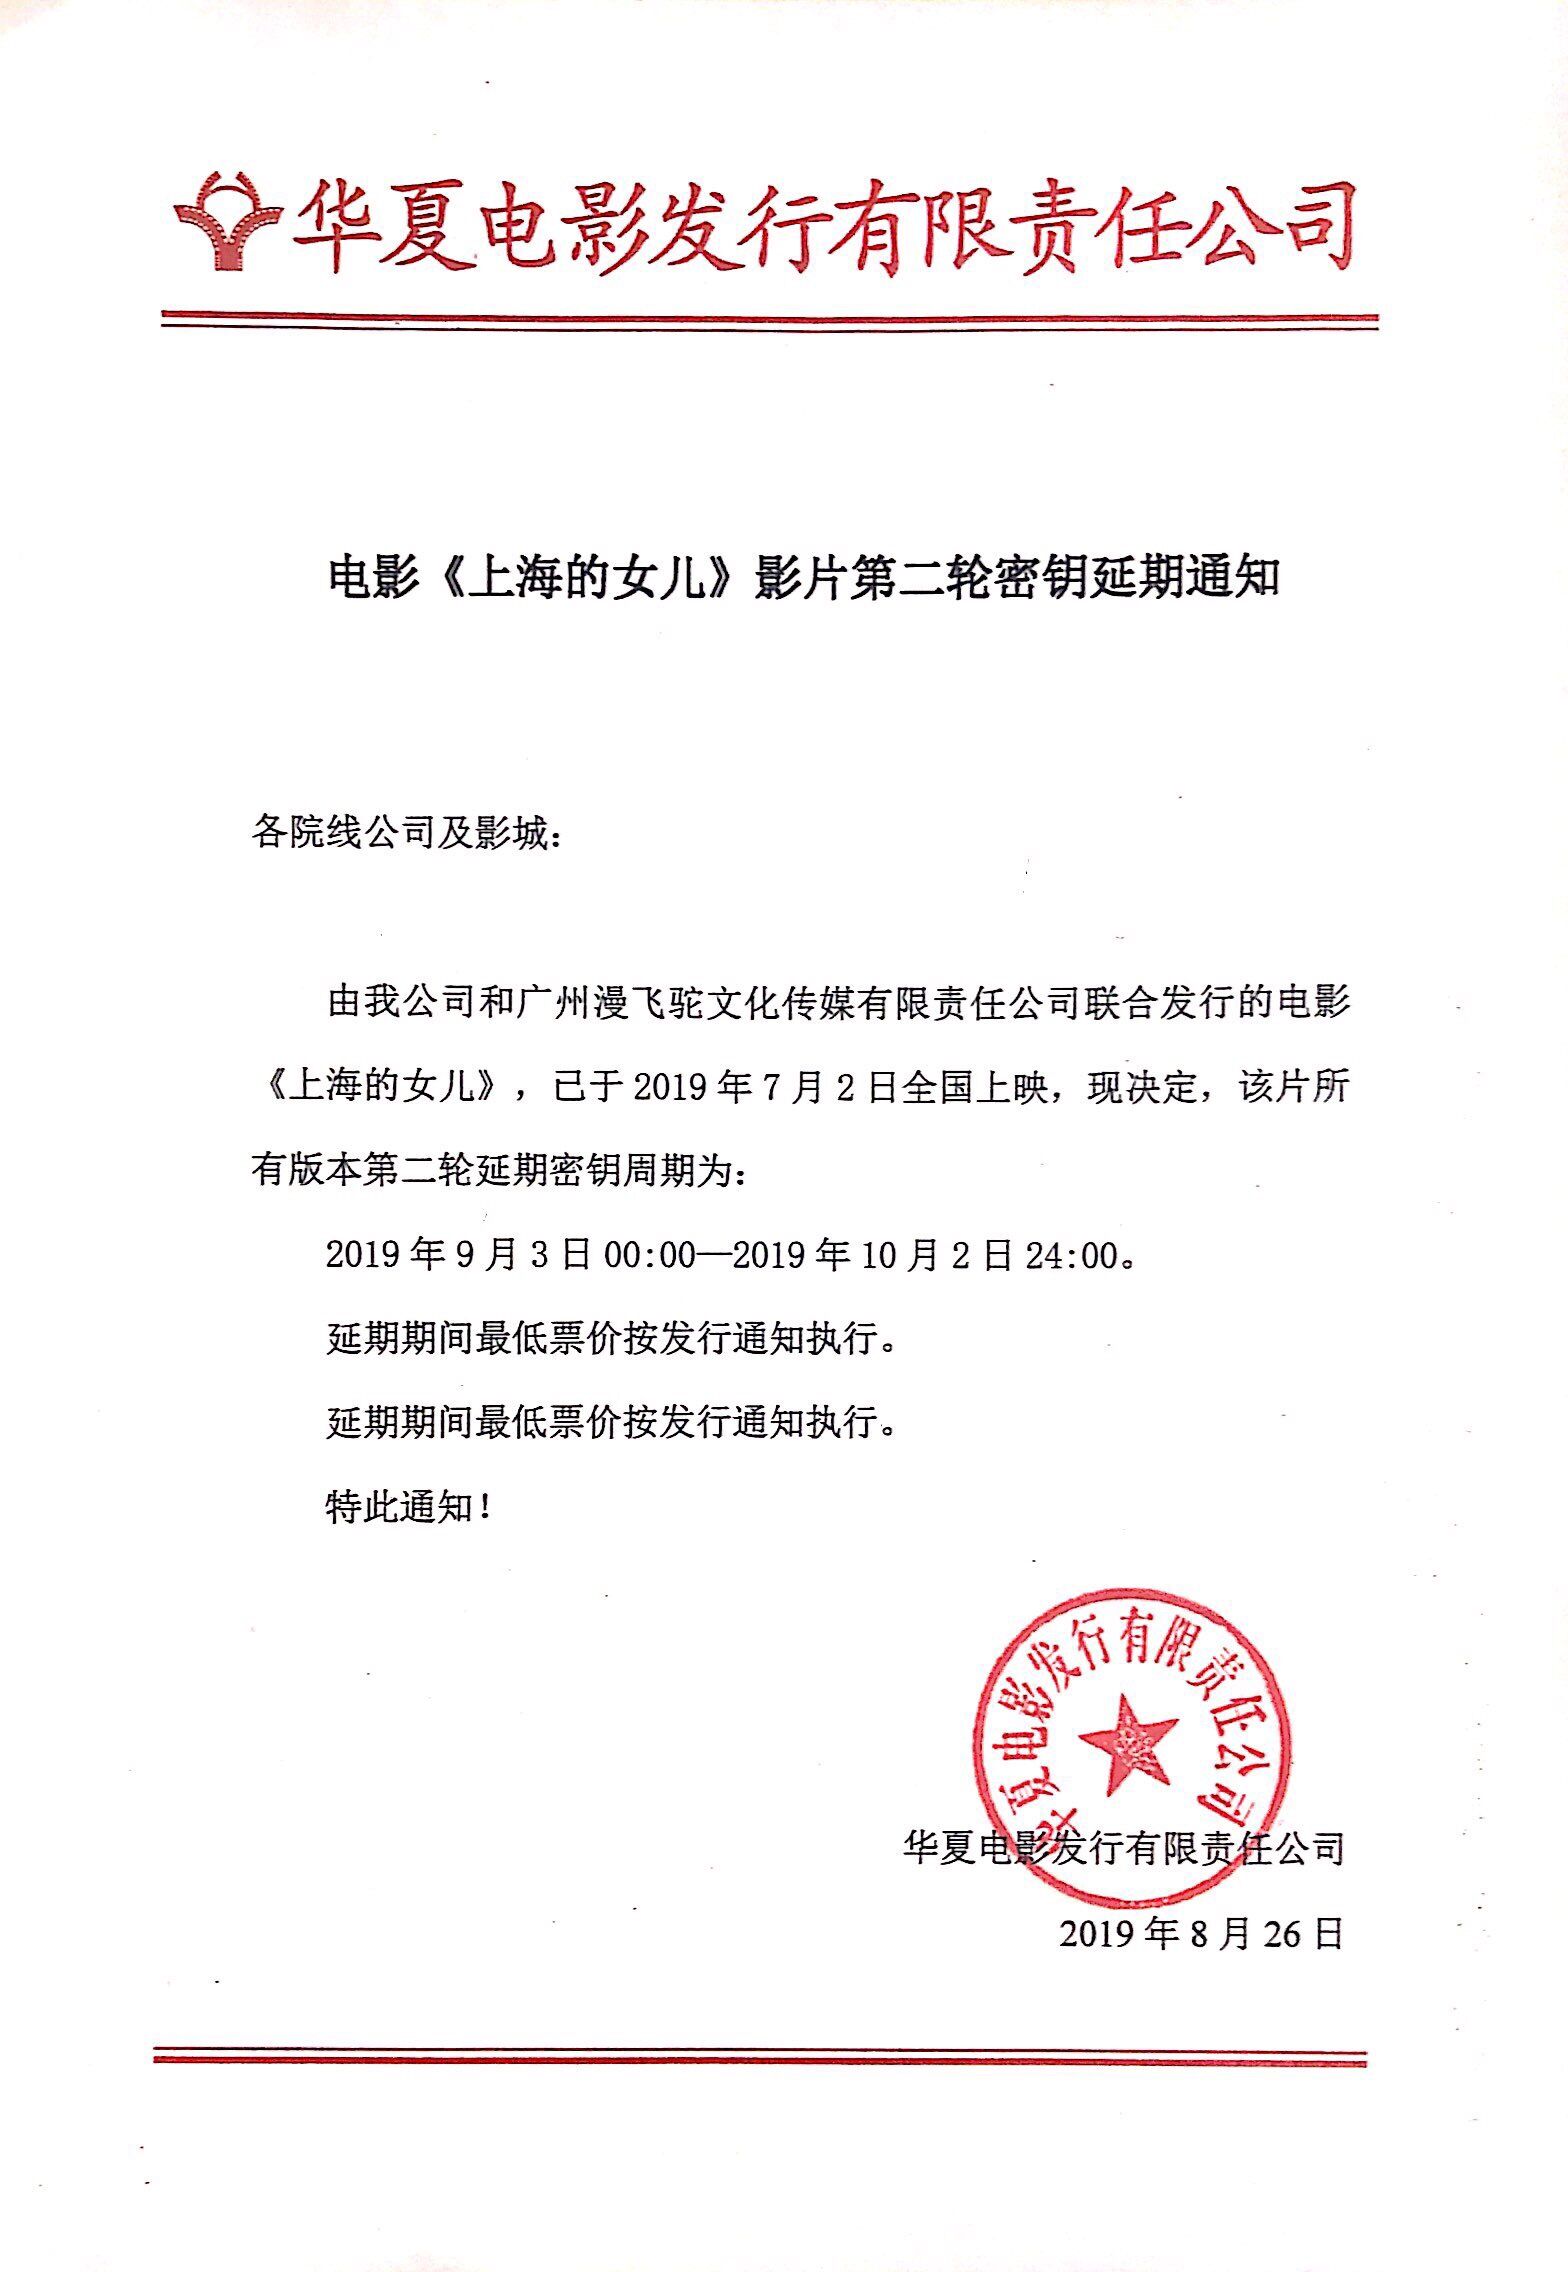 关于影片《上海的女儿》密钥延期至2019年10月02日的通知